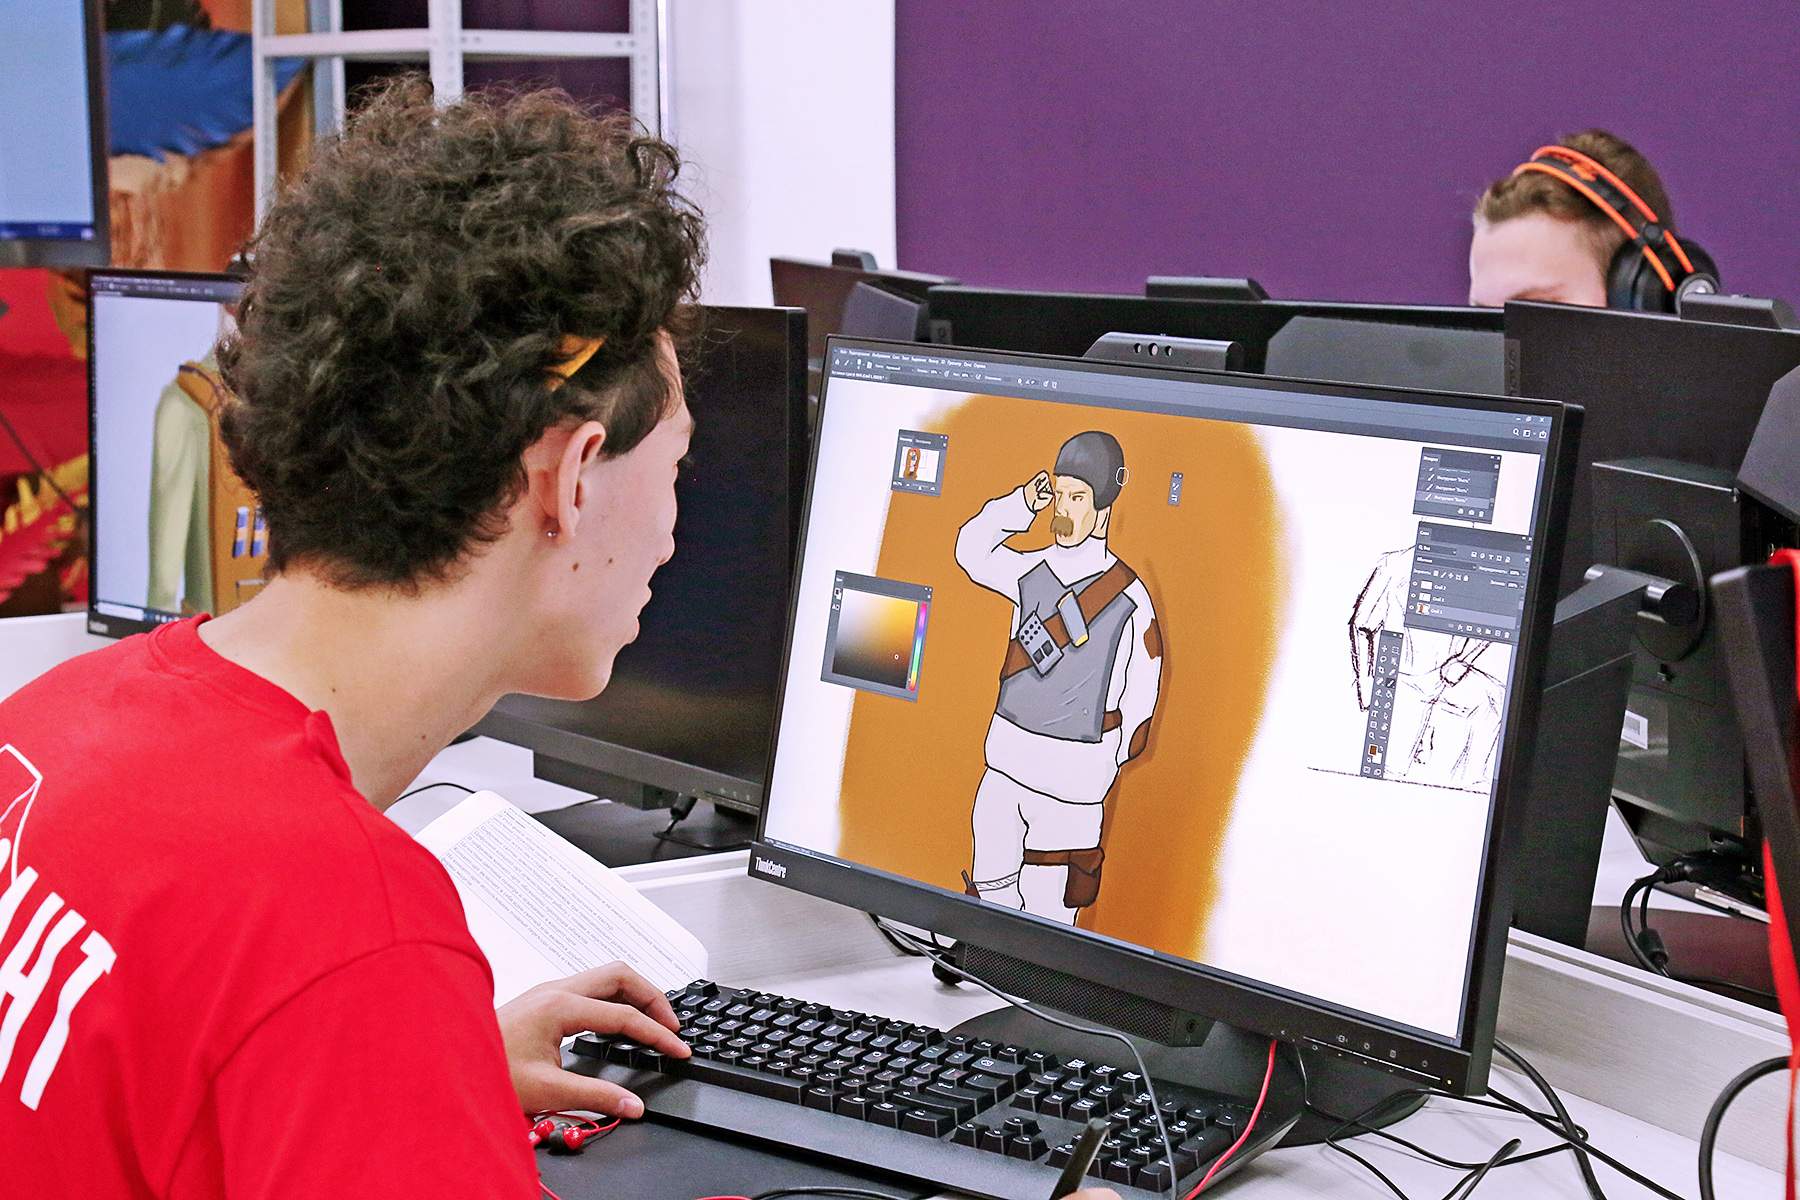 Участники компетенции «3D моделирование для компьютерных игр» IV вузовского отборочного чемпионата ВГУЭС по стандартам WorldSkills создают персонажа для популярного шутера